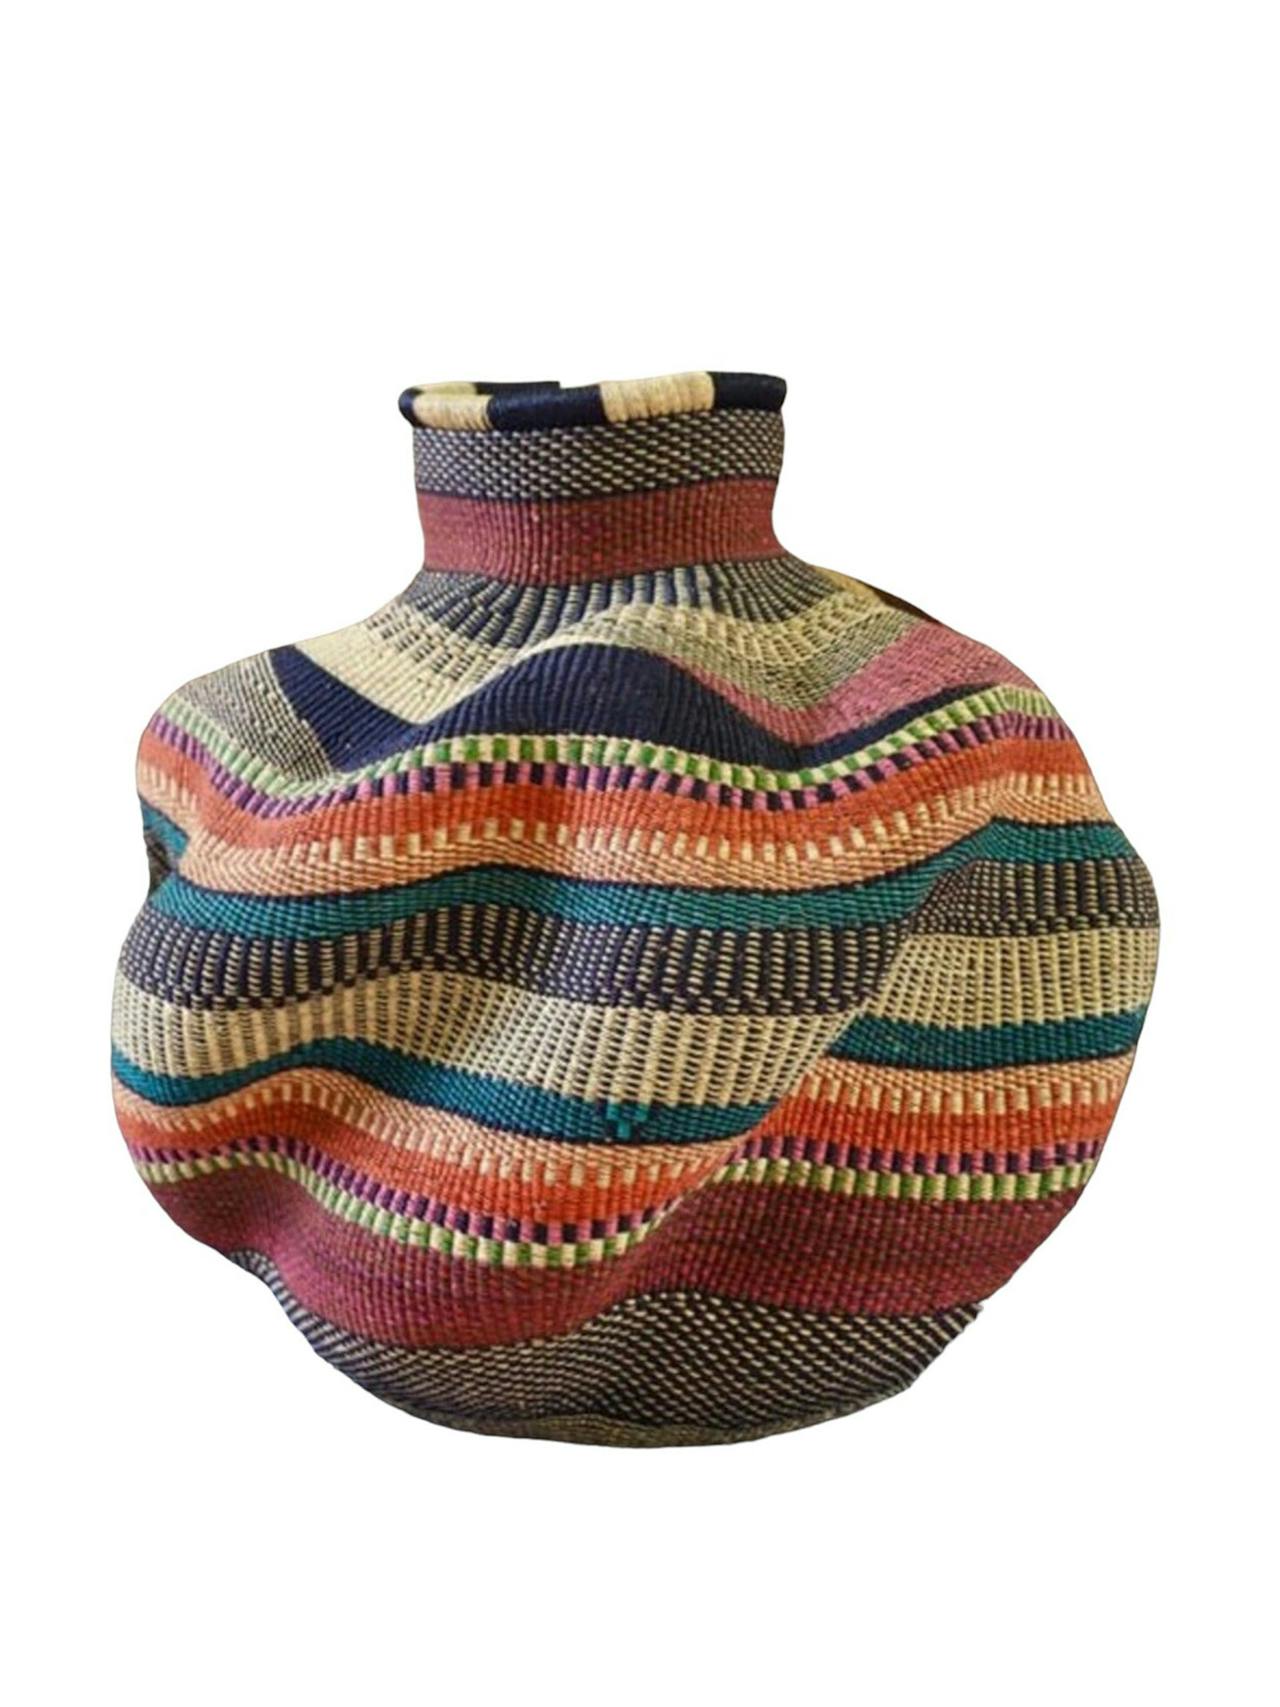 Woven flower pot basket